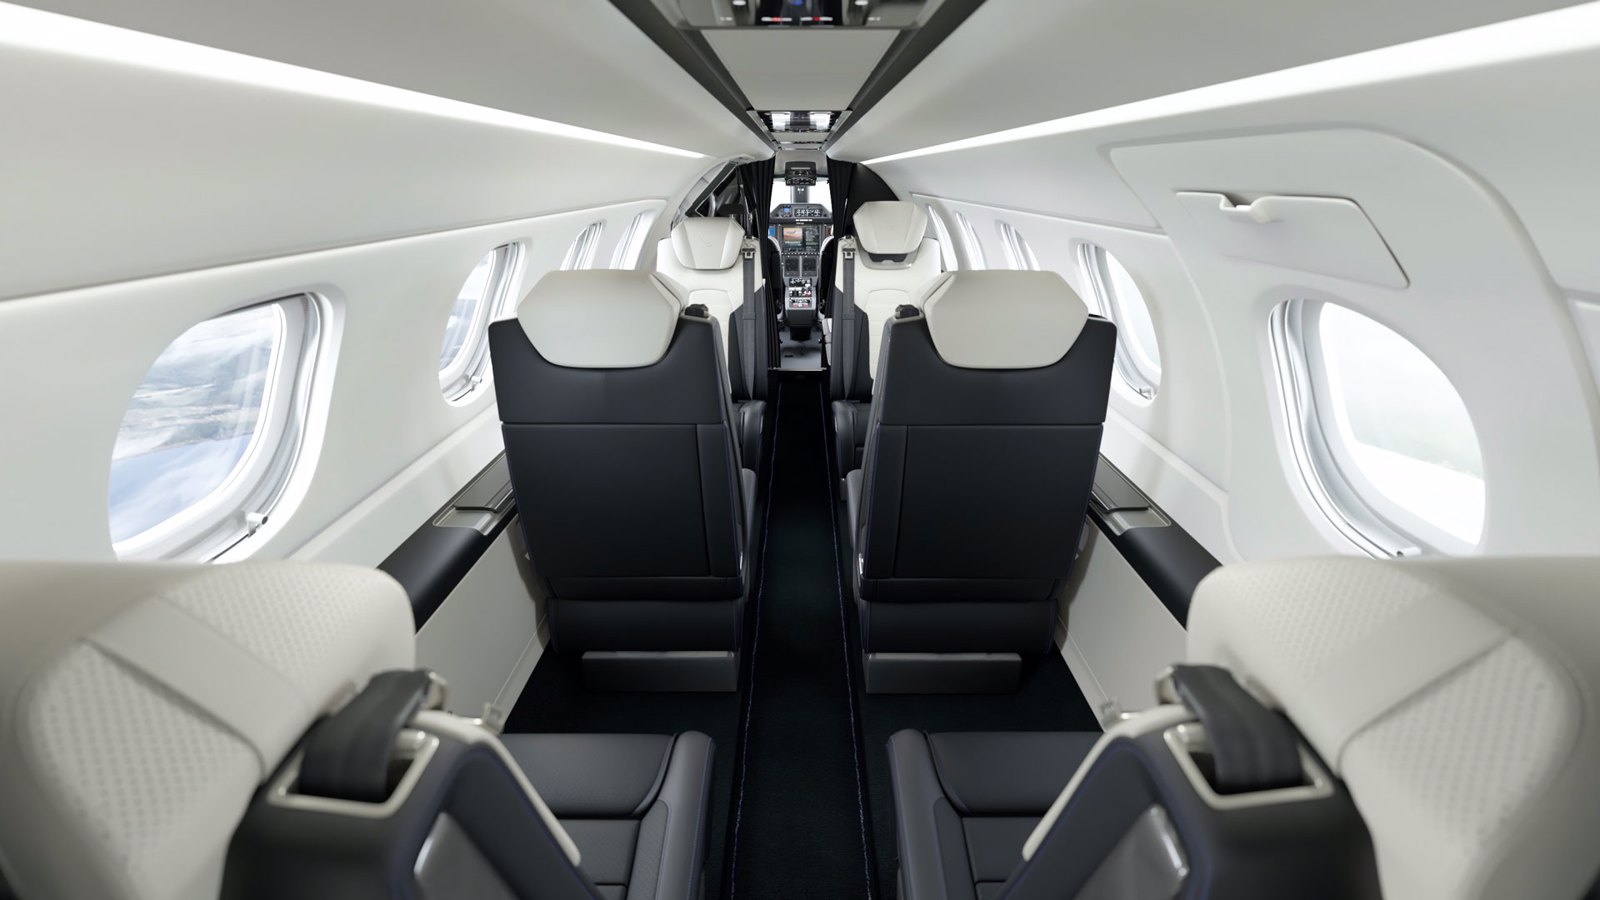 Special edition Embraer Phenom 300E business jet.